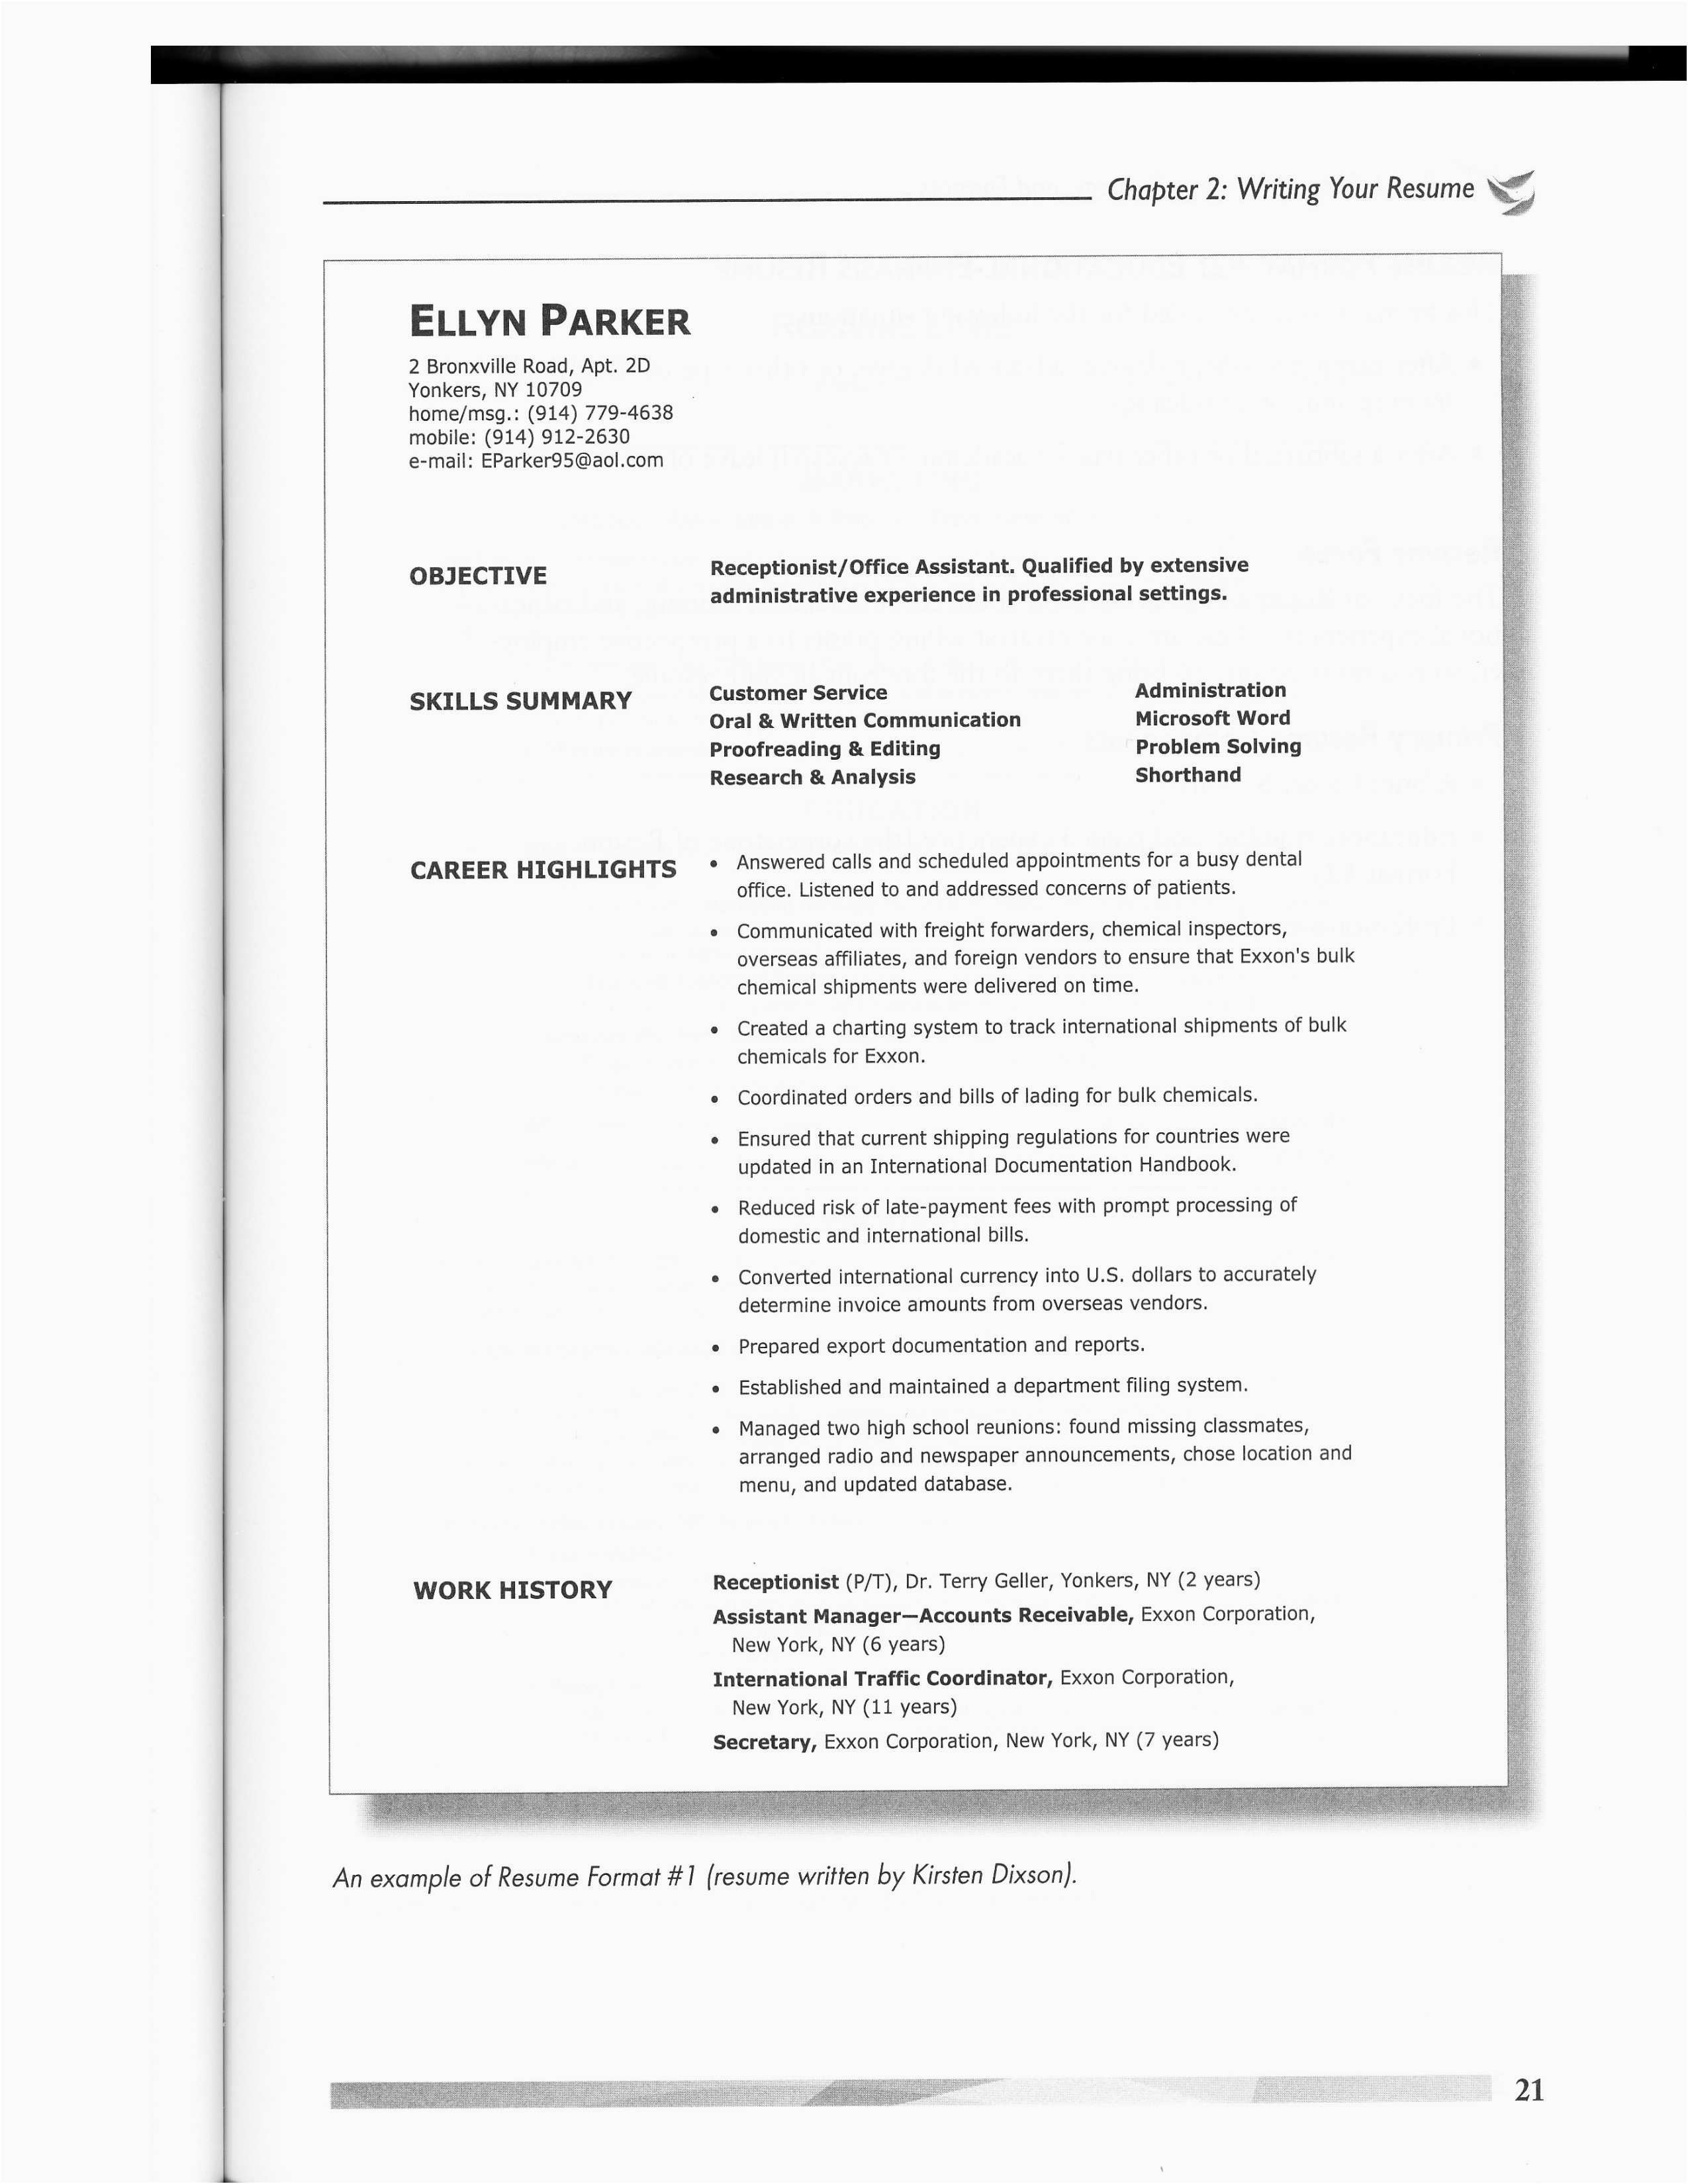 Resume Format For Zoho 